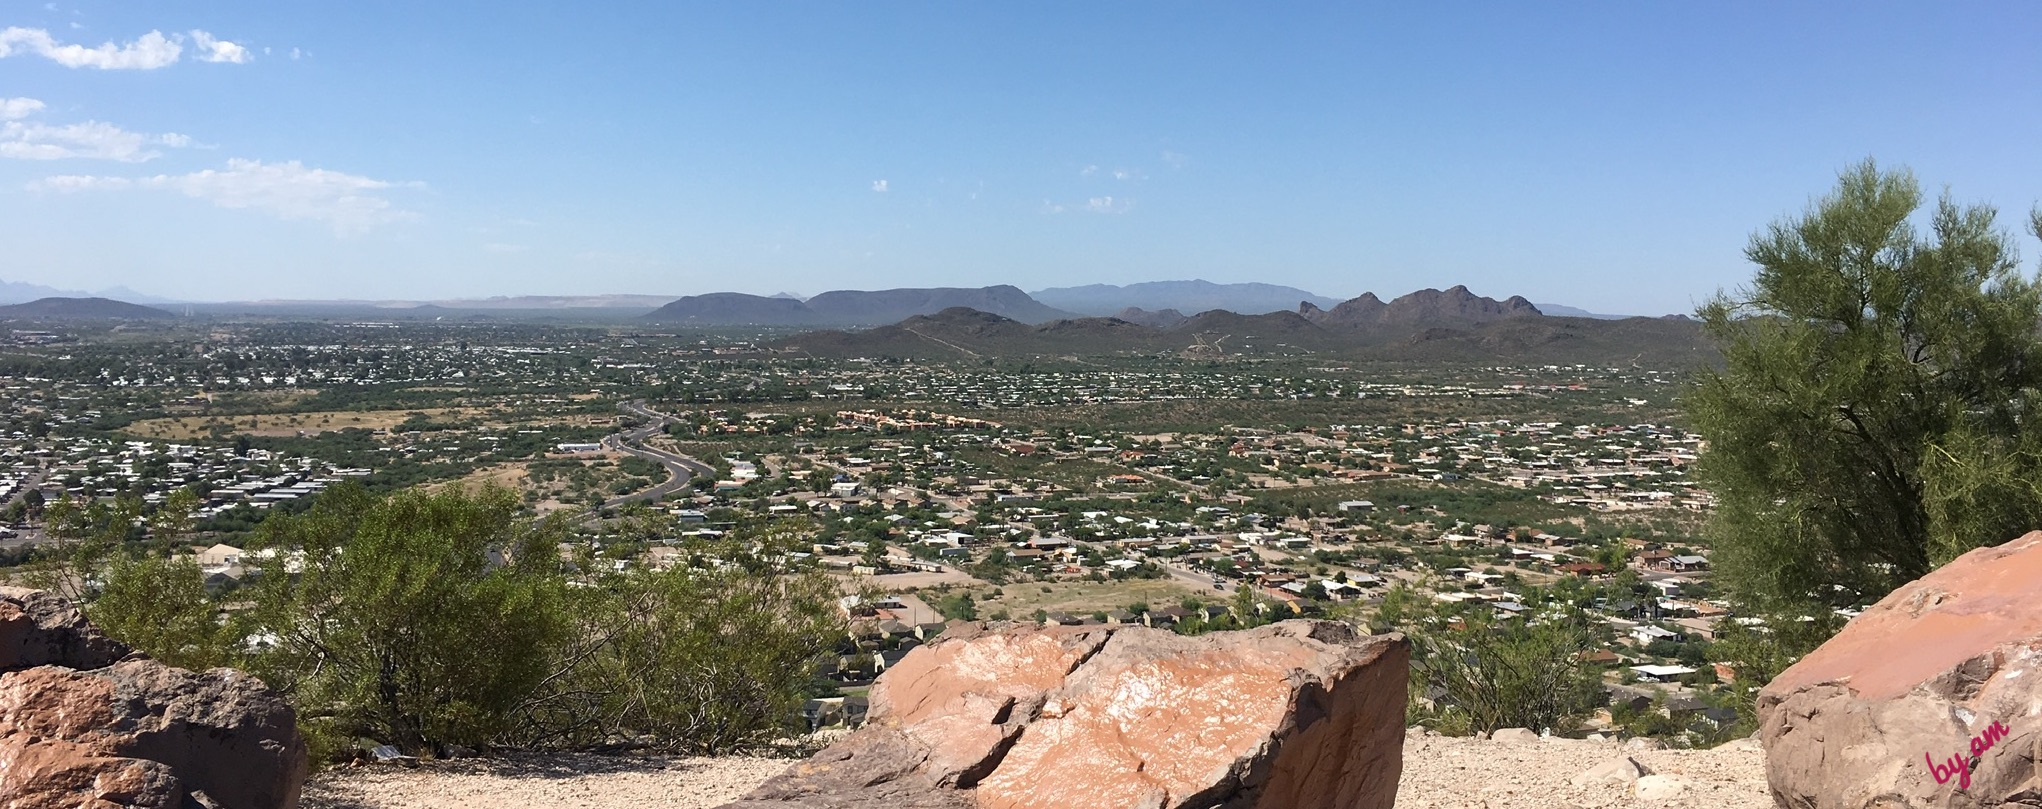 padre kino in montagna foto di Tucson Arizona scattata da Angela Maria Marchetti